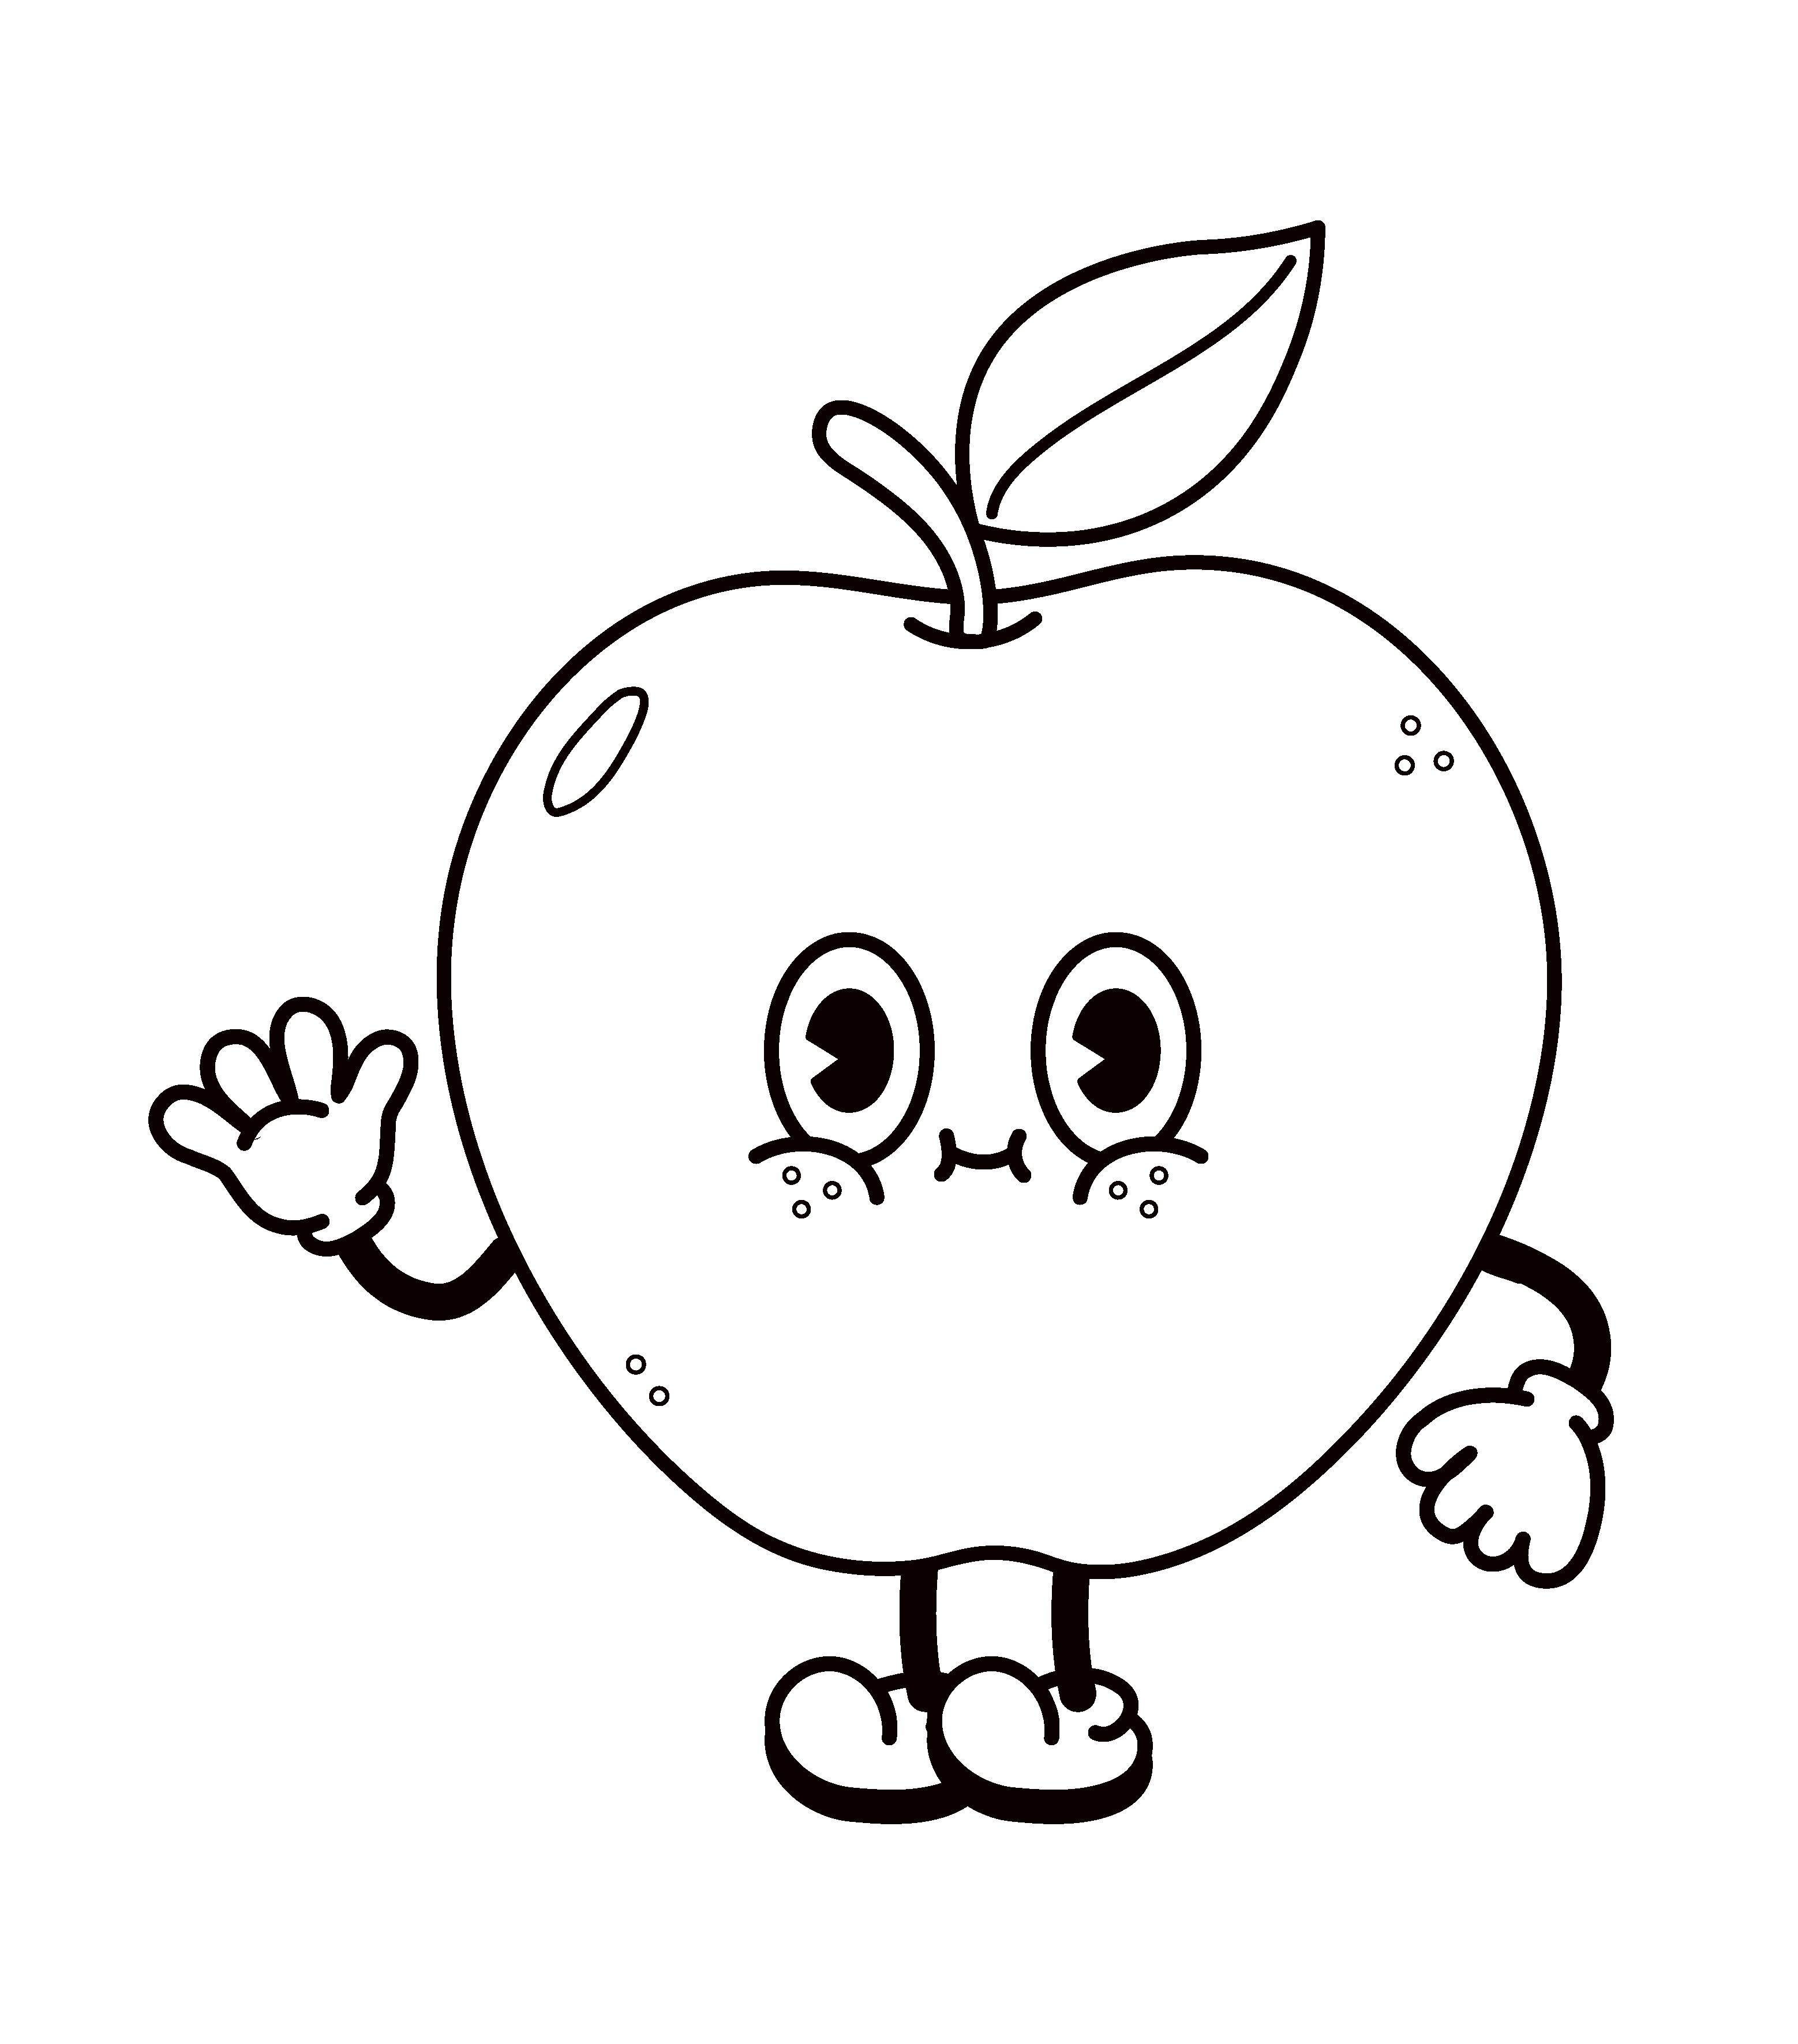 Раскраска милое яблоко с лицом машет рукой формата А4 в высоком качестве